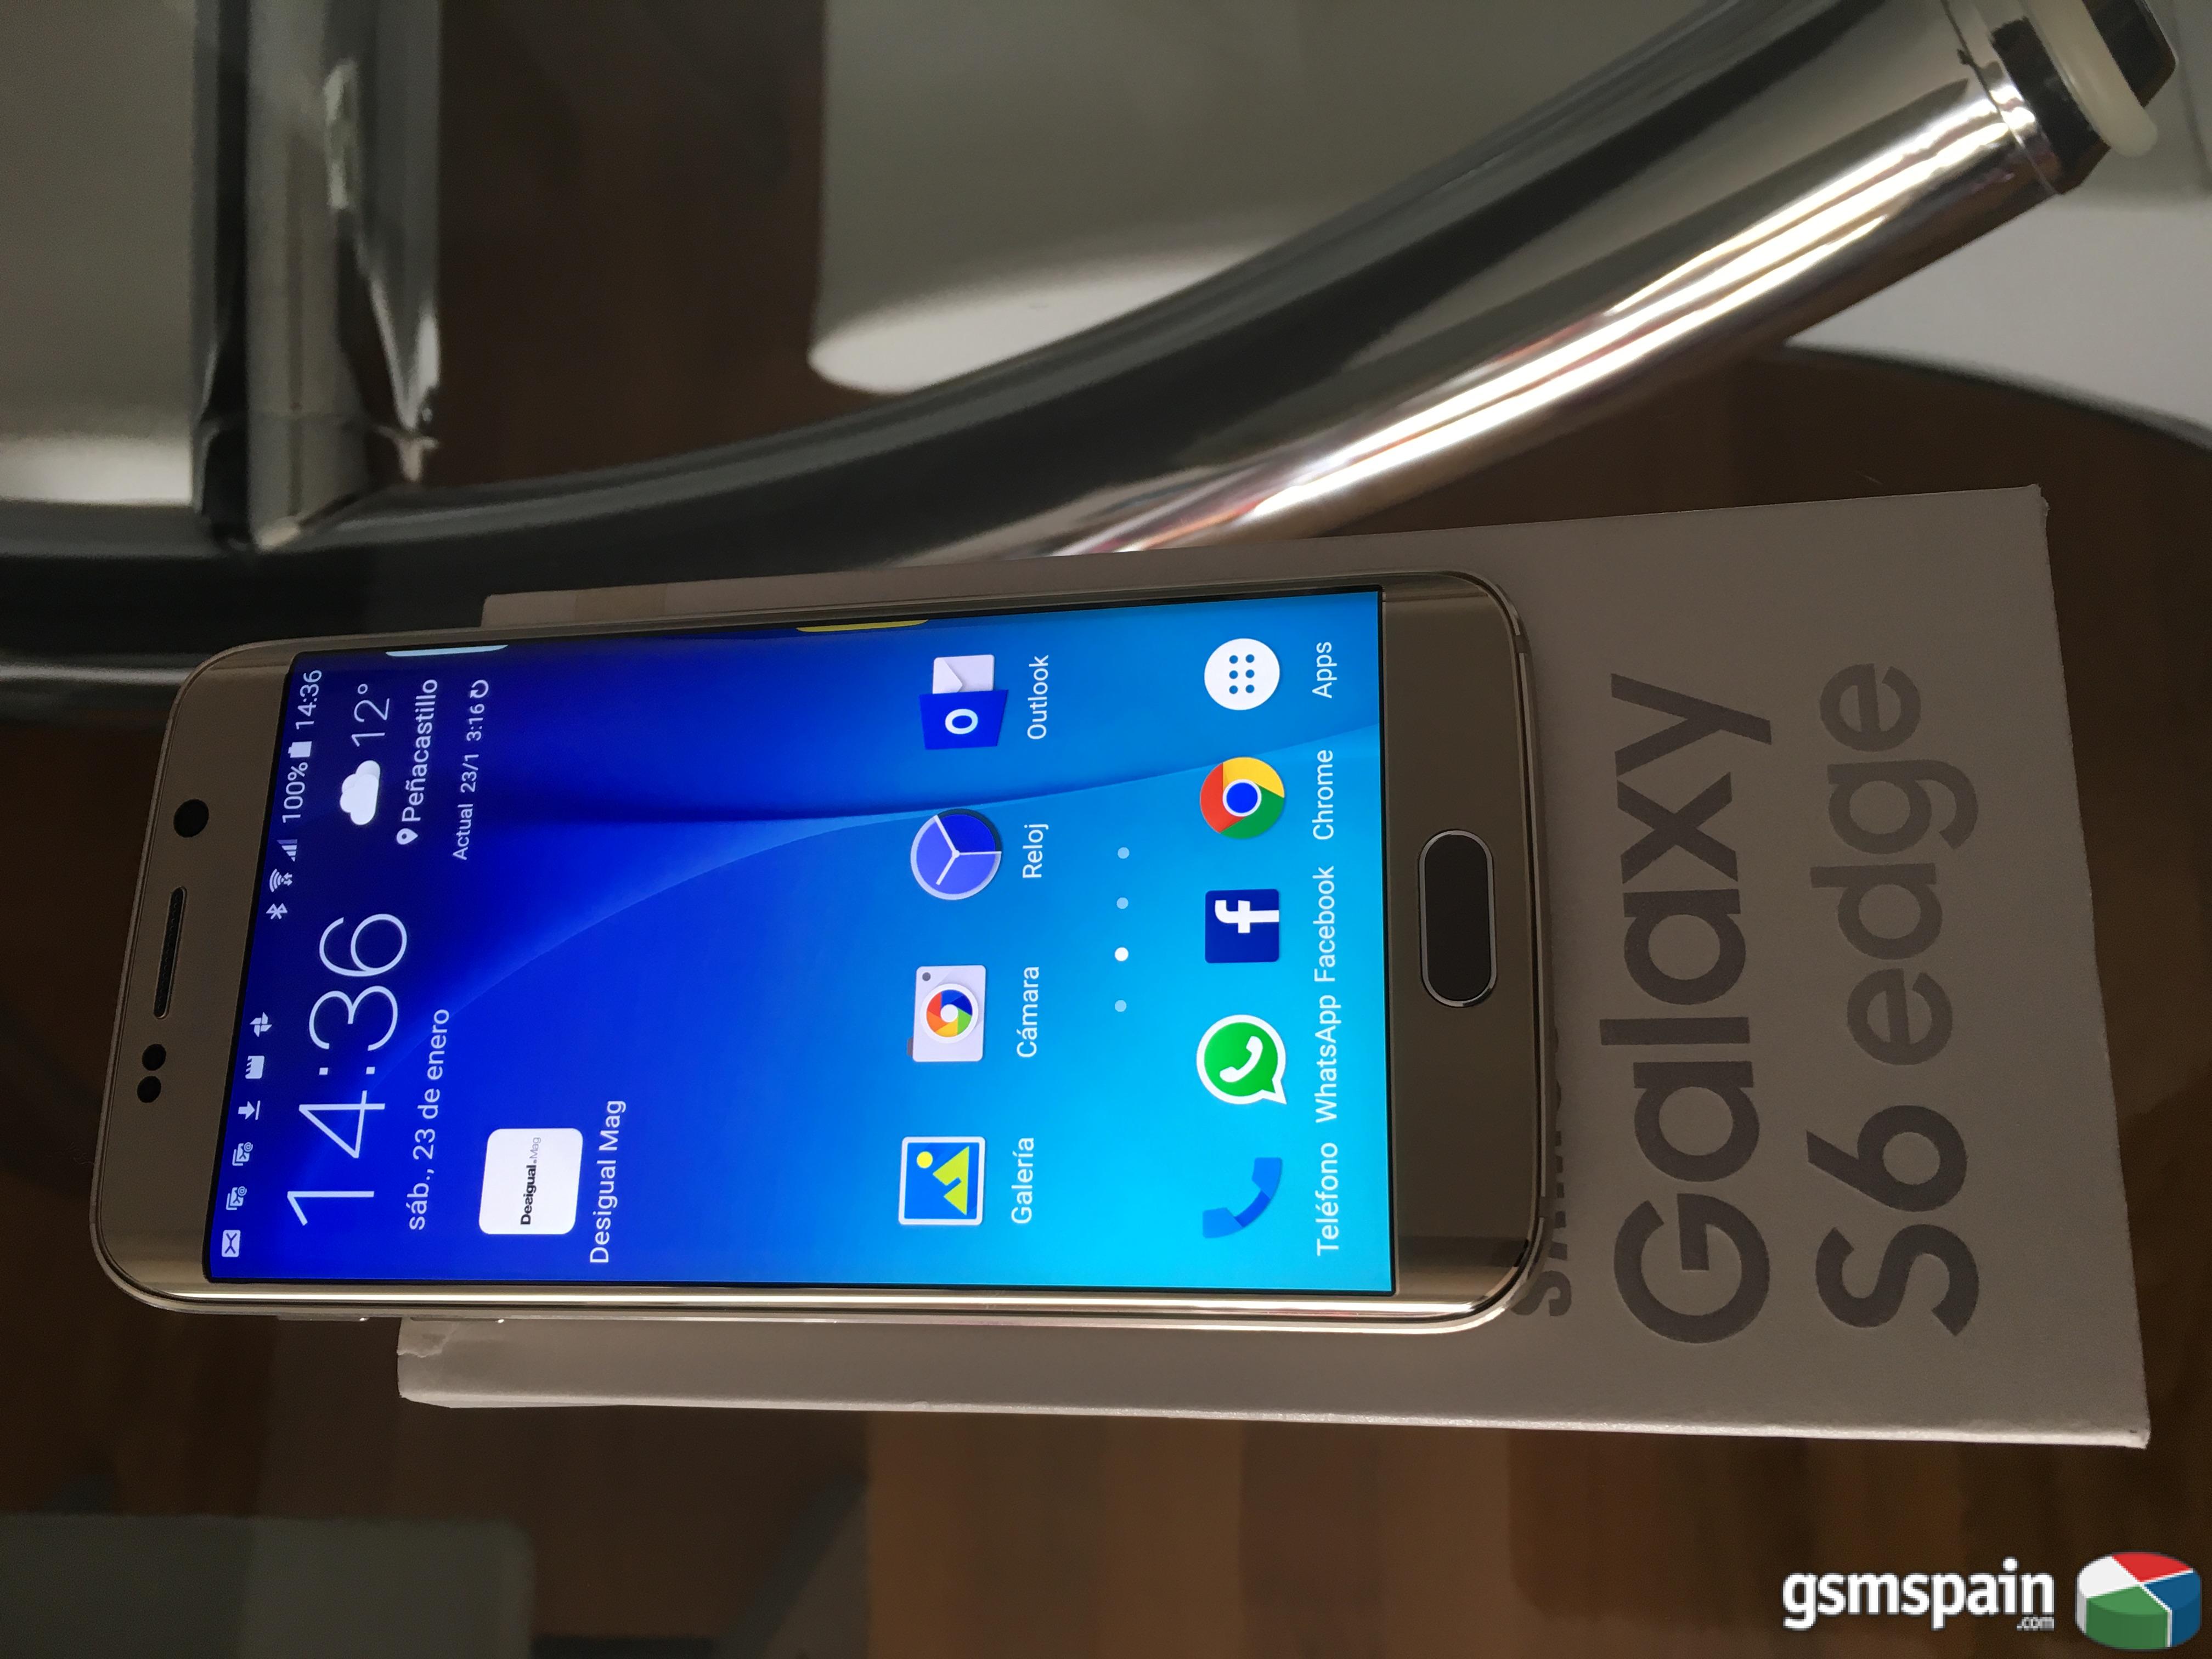 [VENDO] Samsung S6 edge 32Gb gold